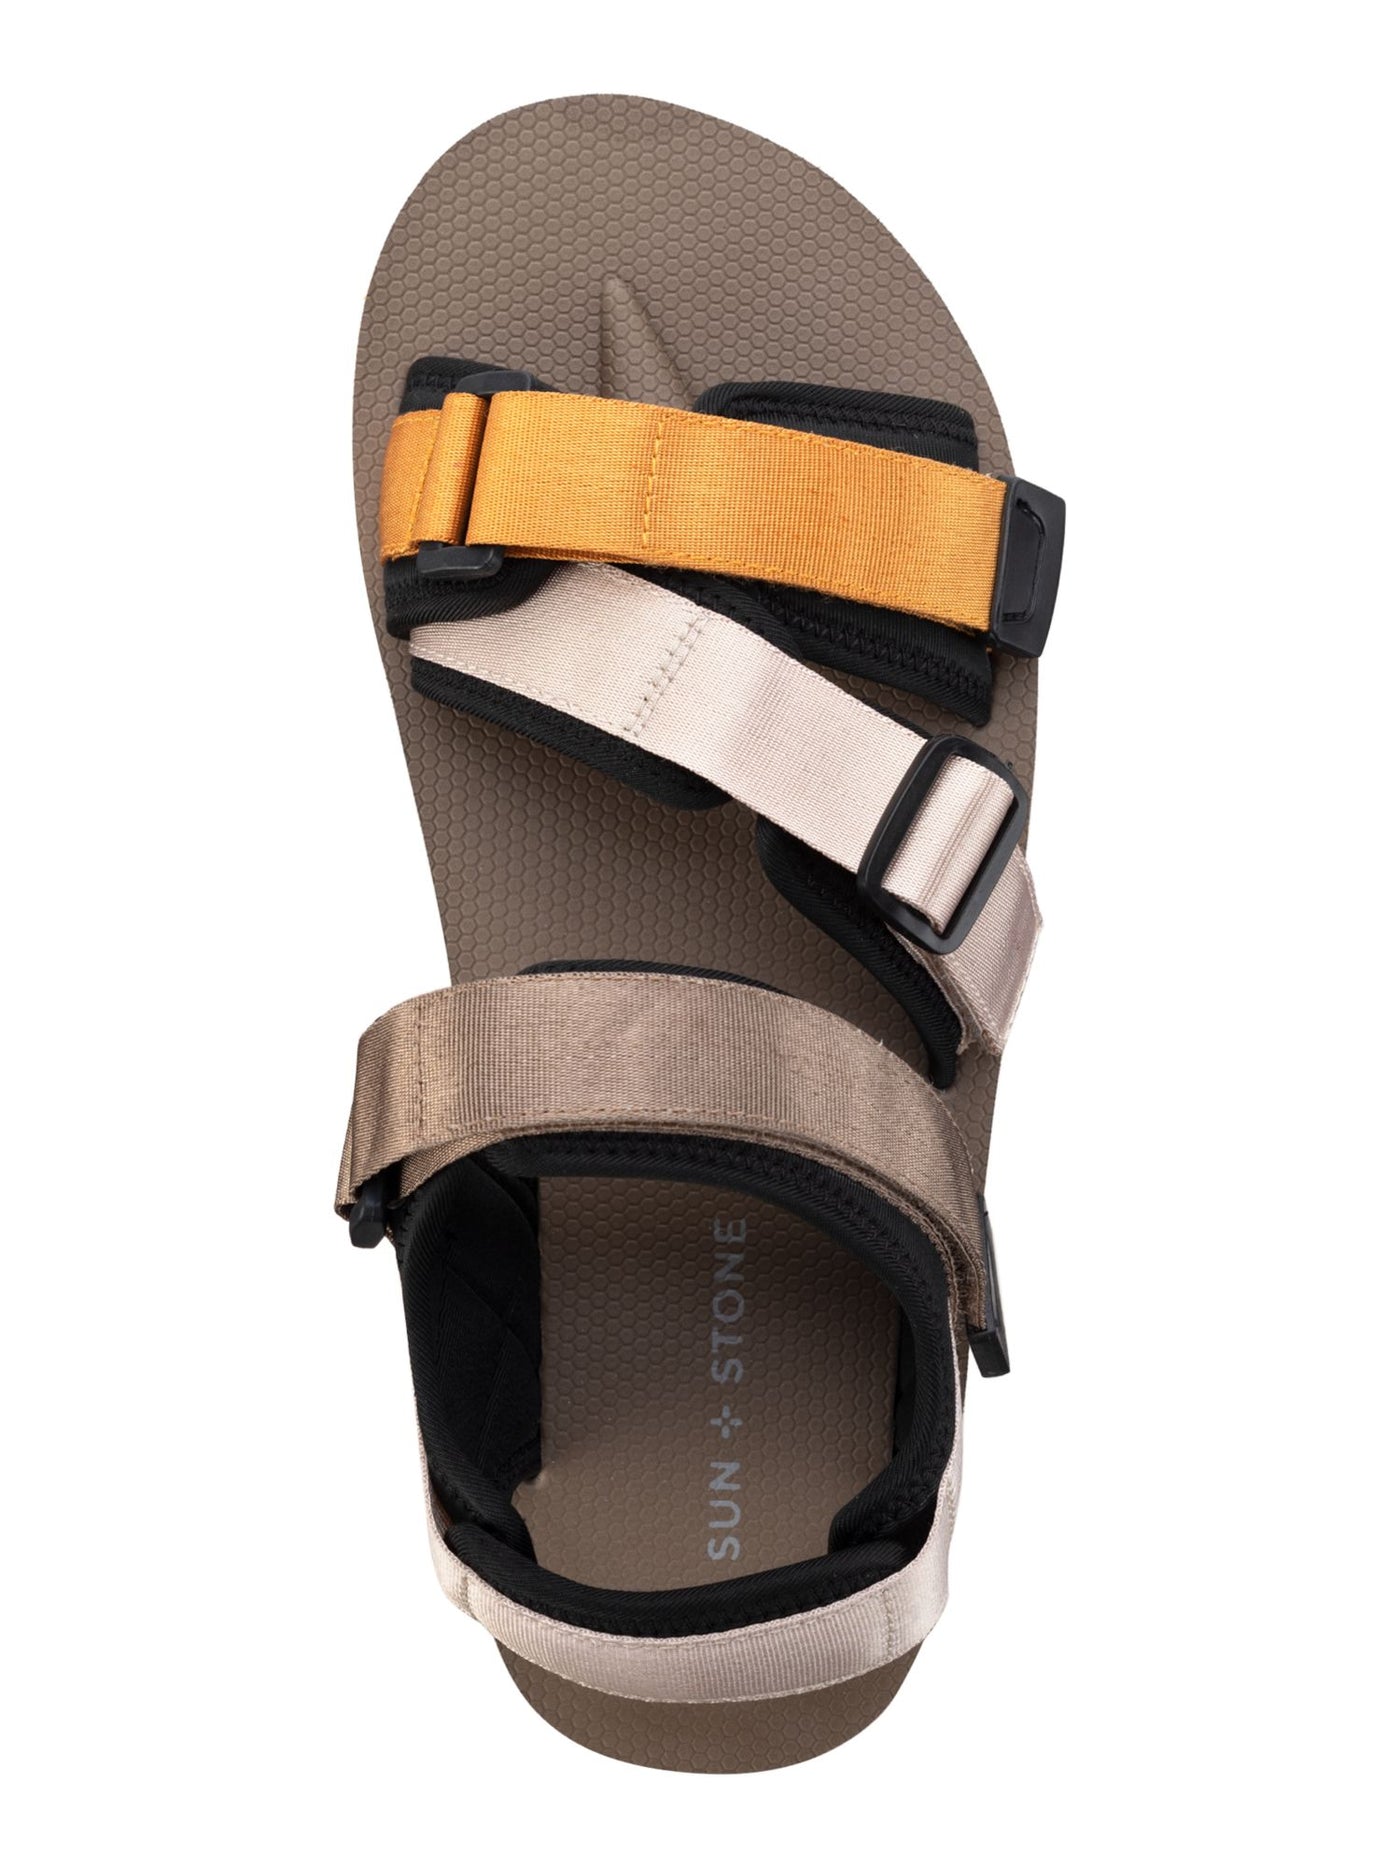 SUN STONE Mens Beige Adjustable Comfort Lormier Round Toe Platform Sandals Shoes 11 M